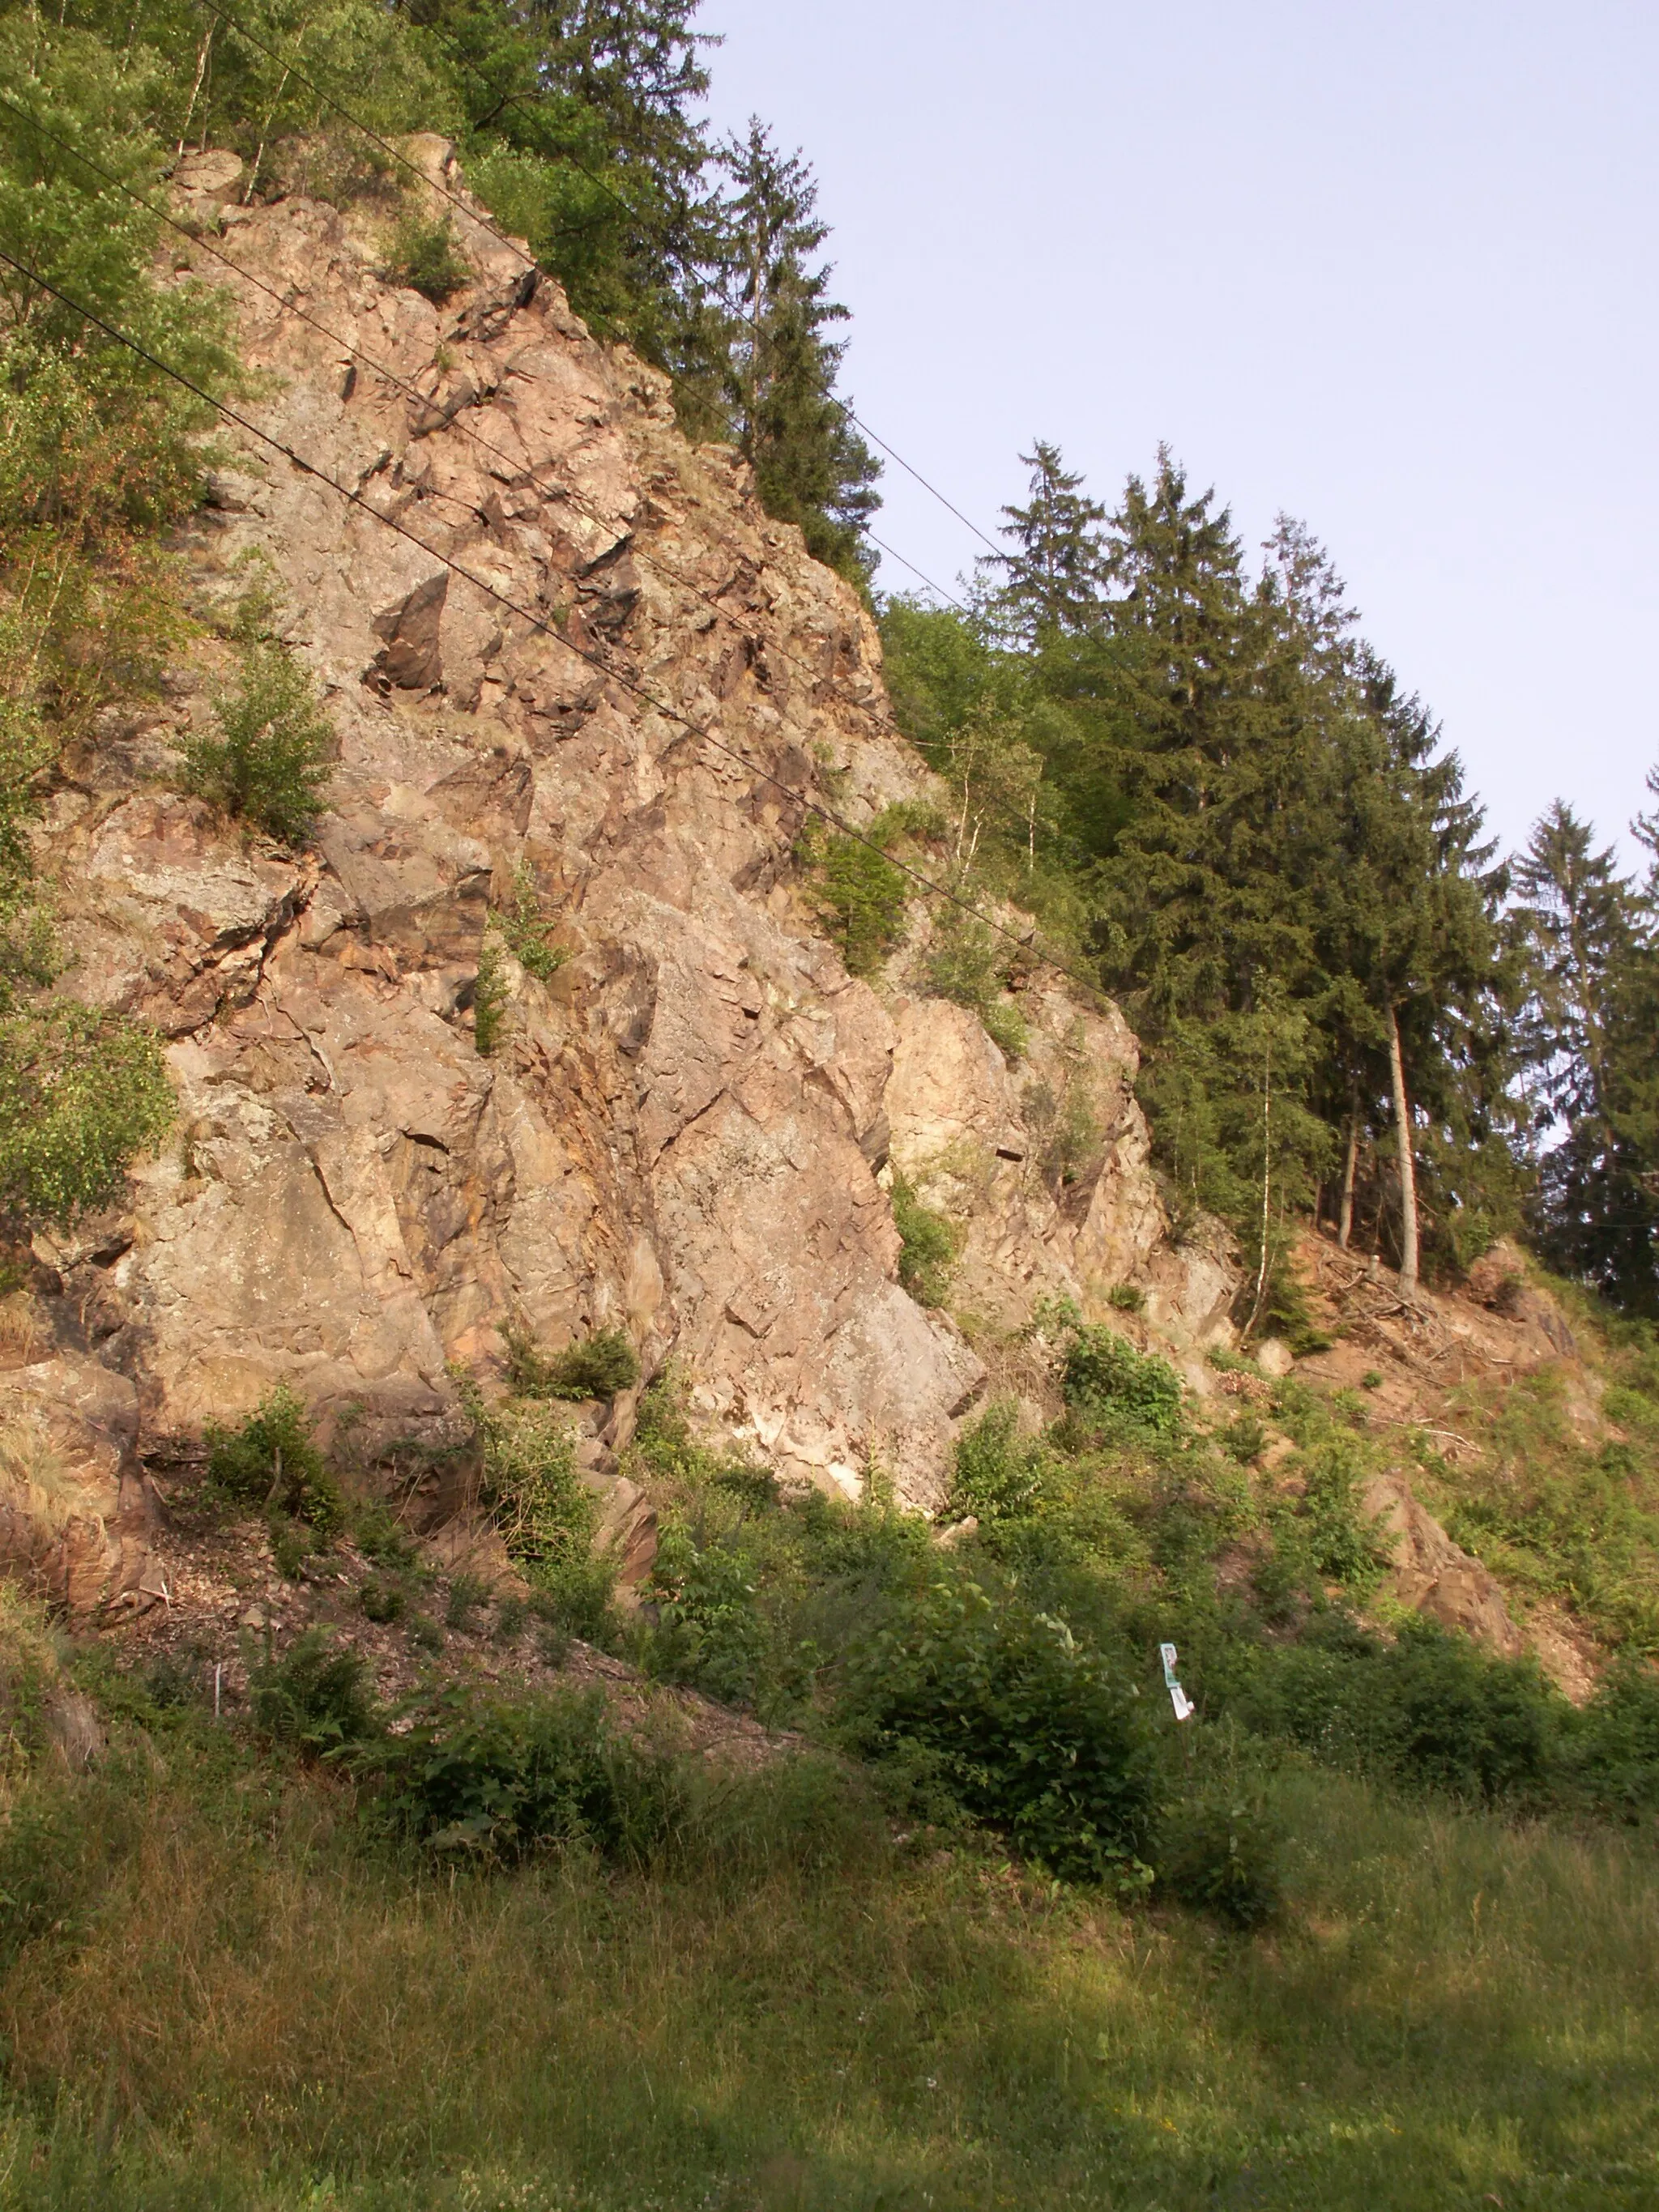 Photo showing: přírodní rezervace "Vírská skalka" u obce Vír, okres Žďár nad Sázavou